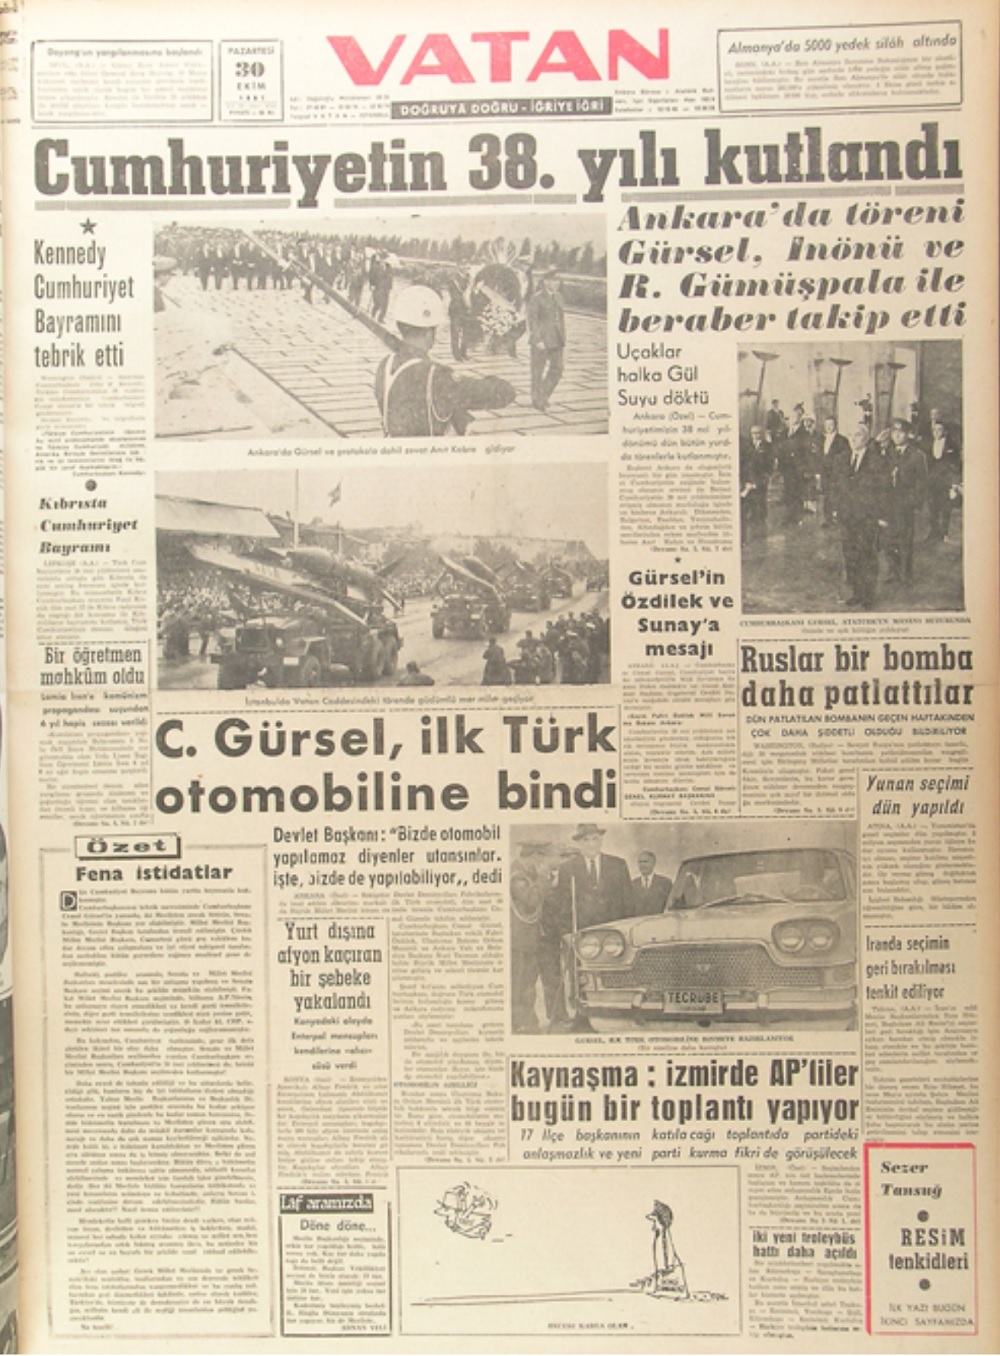 Vaatan Gazetesinin 30 Ekim 1961 tarihli sayısında Devrim Arabalarının tanıtımı haberleştirilmişti